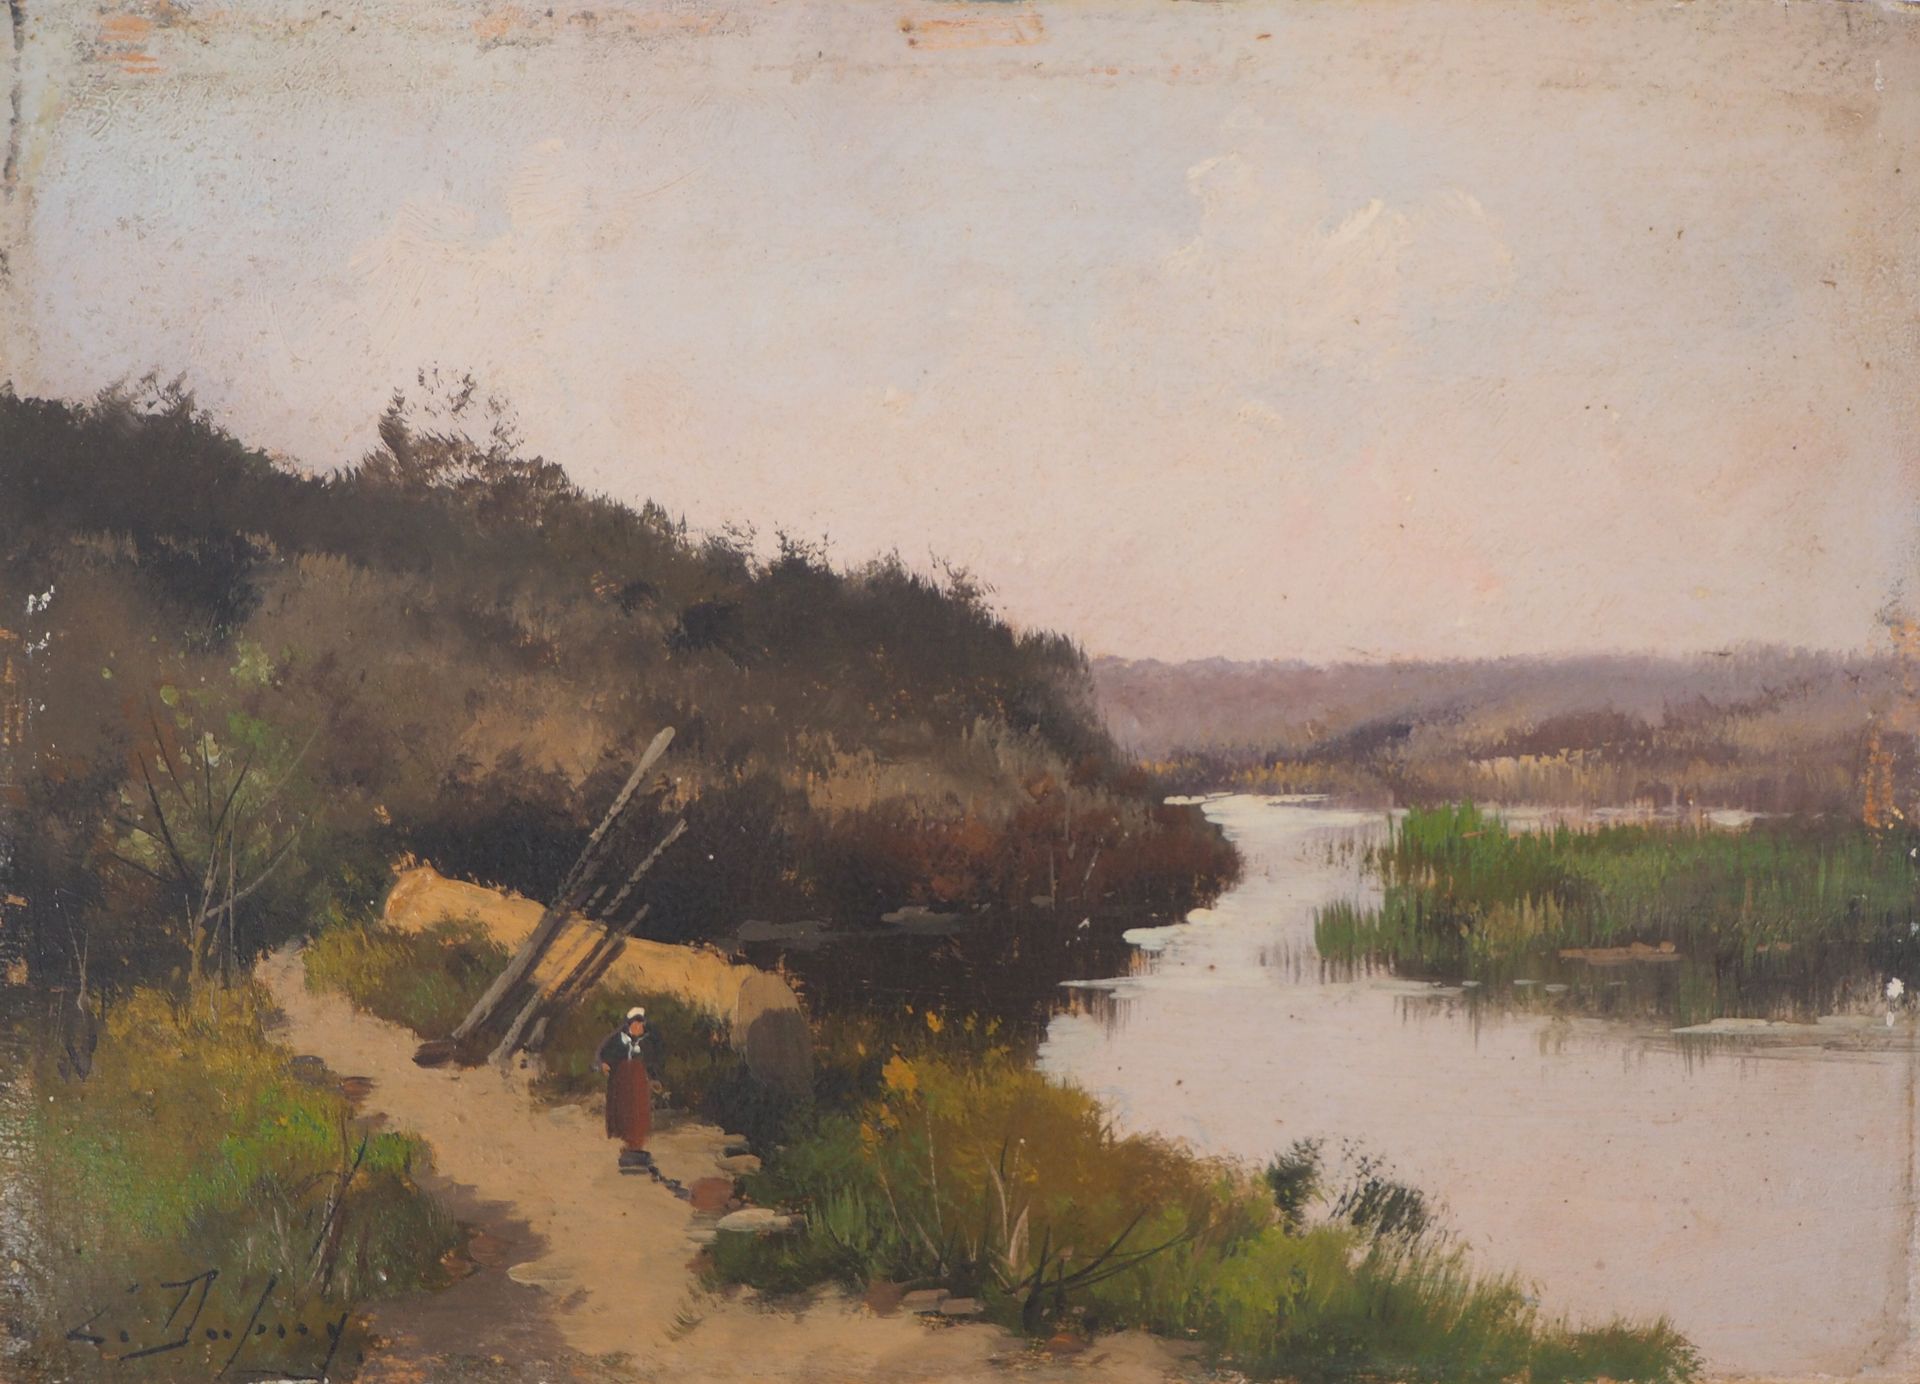 Eugène GALIEN-LALOUE Eugène Galien-Laloue (1854-1941)

Granjero junto al río

Ól&hellip;